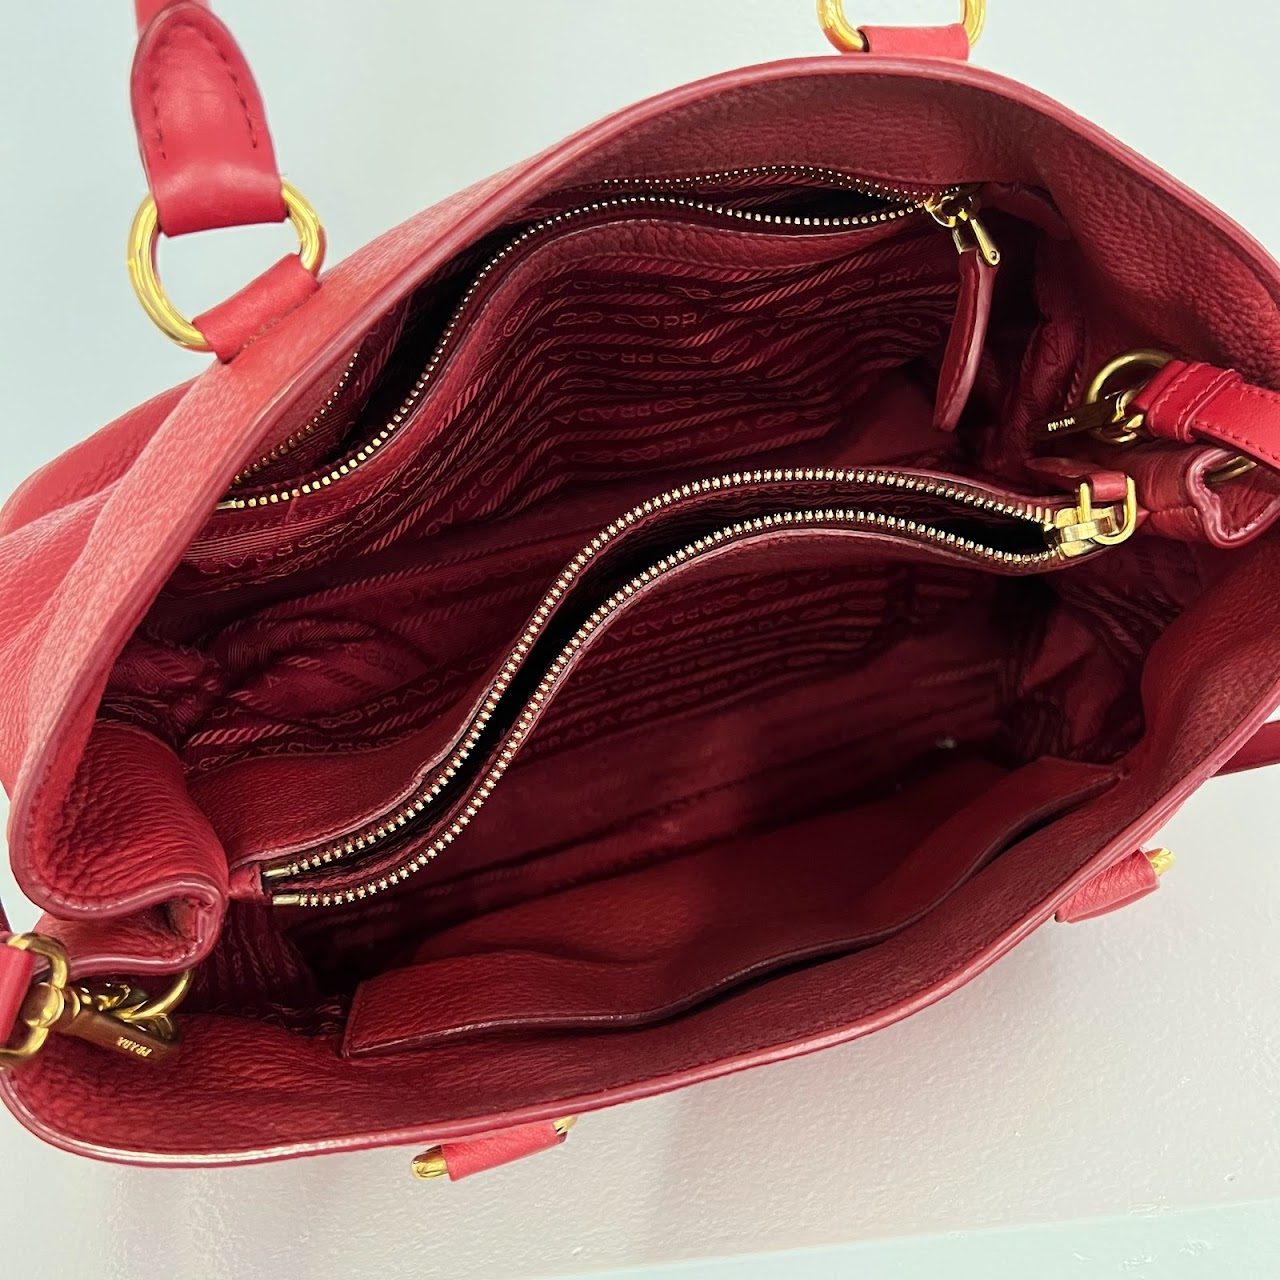 Prada Red Leather Shoulder Bag